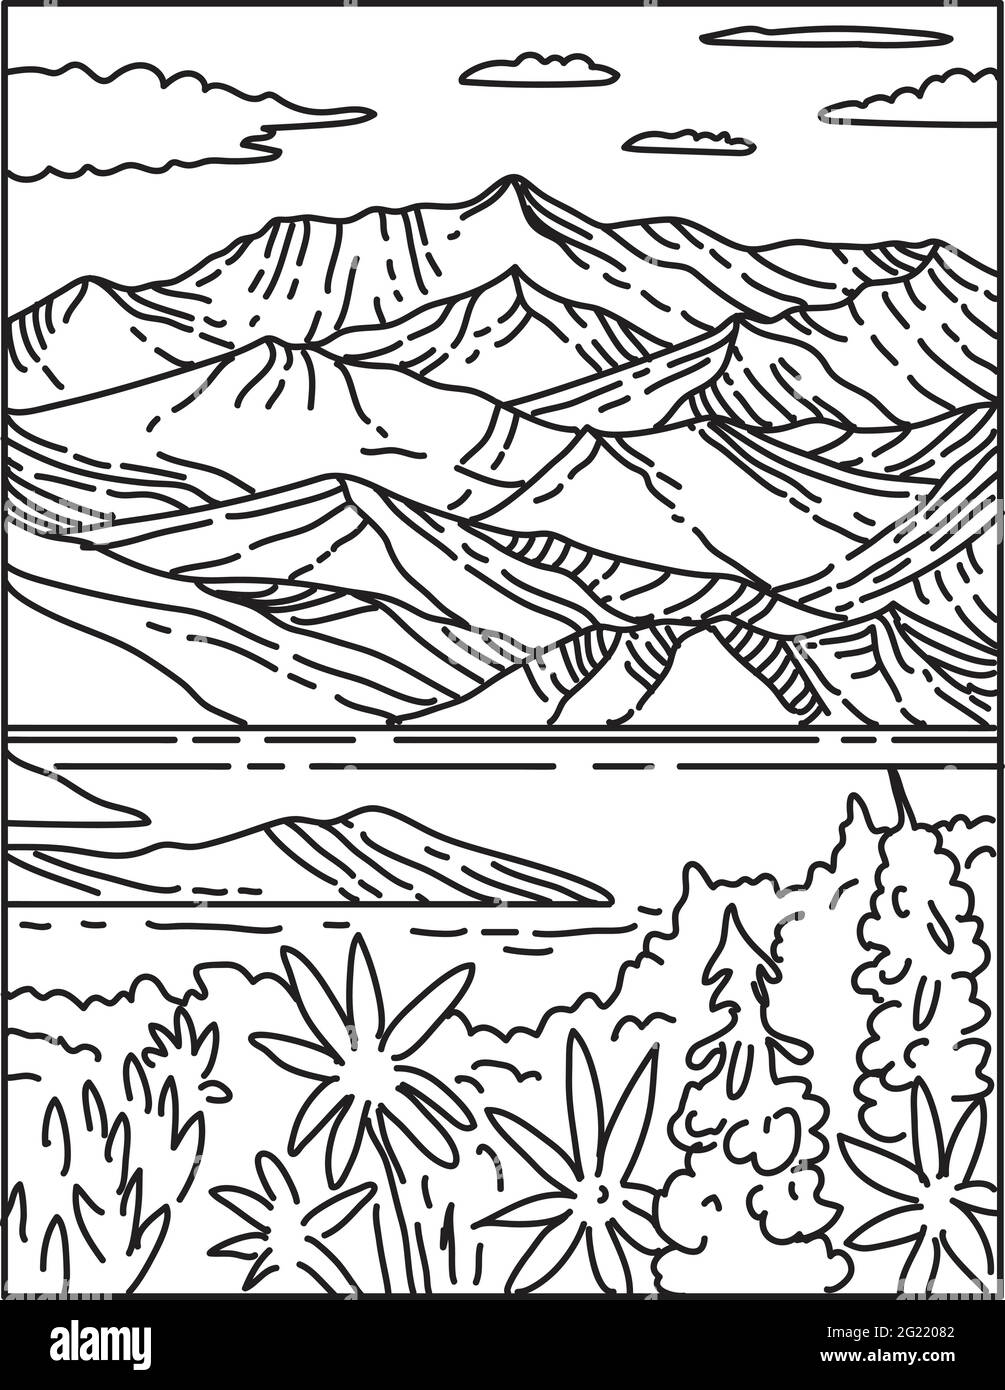 Illustrazione in linea singola di Wrangell-St. Elias National Park and Preserve situato nel centro-sud dell'Alaska, Stati Uniti d'America fatto in nero retrò Illustrazione Vettoriale